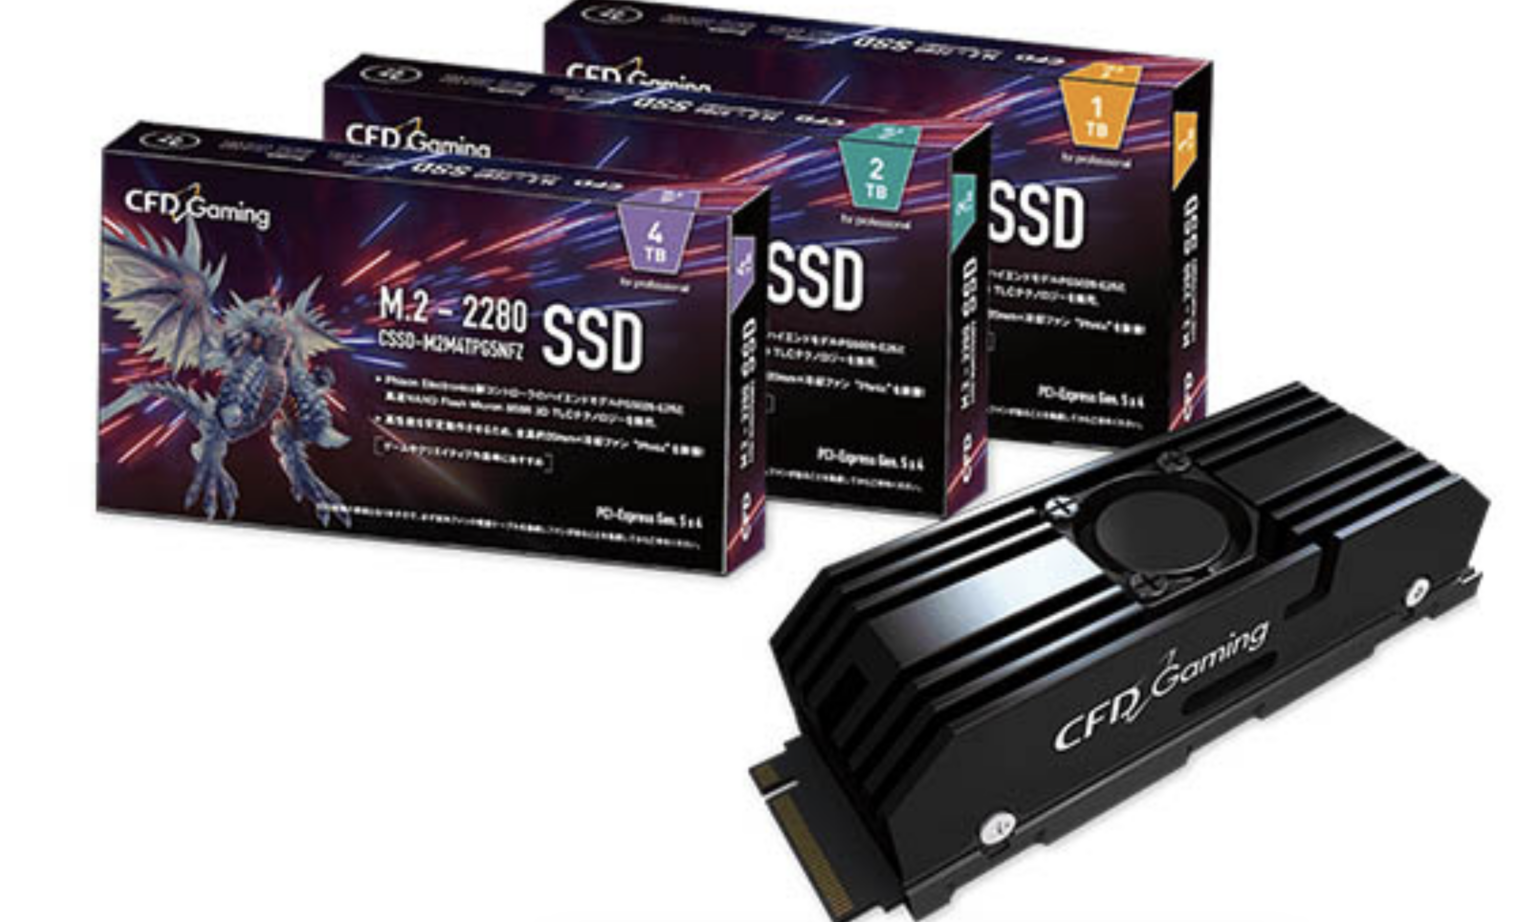 Ssd pcie 5.0. PCIE 5.0. PCI 5.0 SSD m2 как подключить видео. SSD PCI 5.0 купить. SSD PCI-E 5.0 купить.